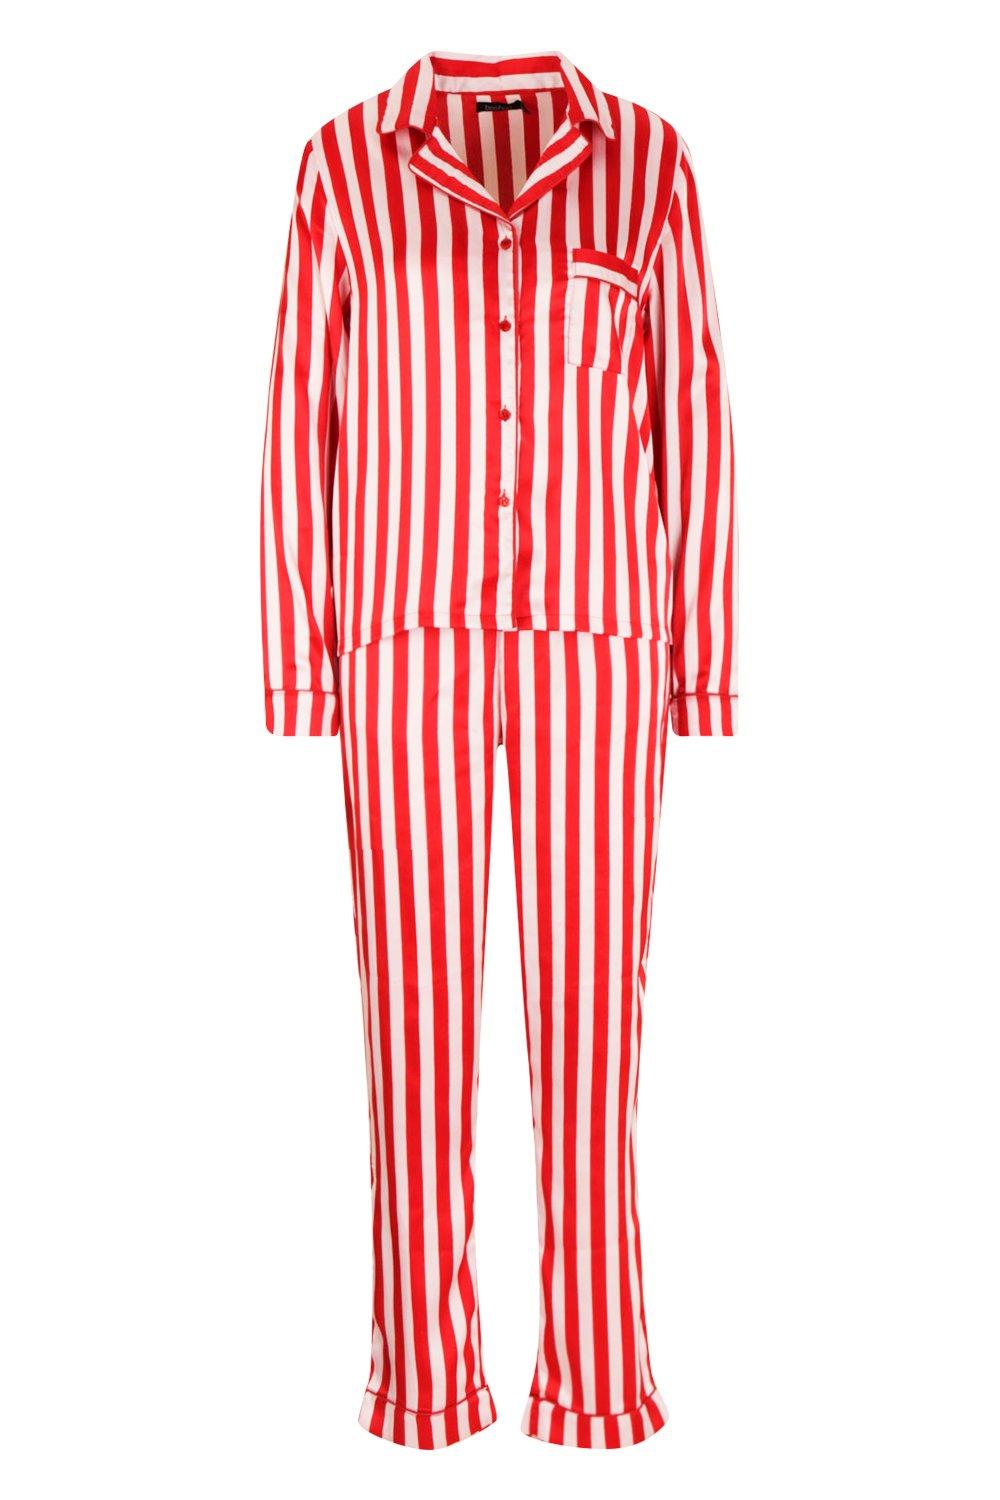 Ensemble garçon blanc et rouge rayé – LB Pyjama